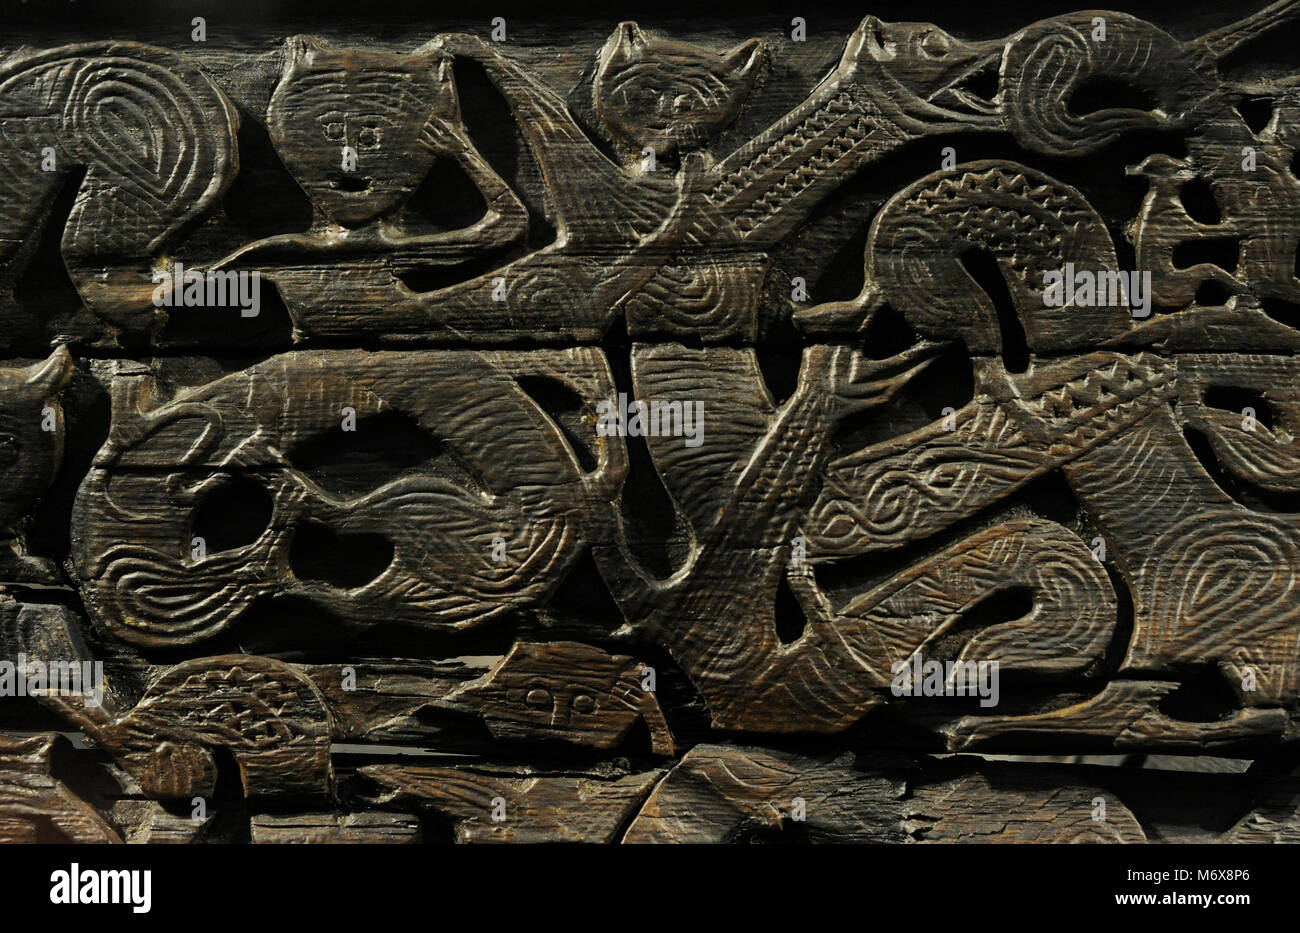 Chariot Viking. Le bois. L'an 800. Détail des reliefs. Trouvé dans la tombe du navire Oseberg. Viking Ship Museum. Oslo. La Norvège. Banque D'Images